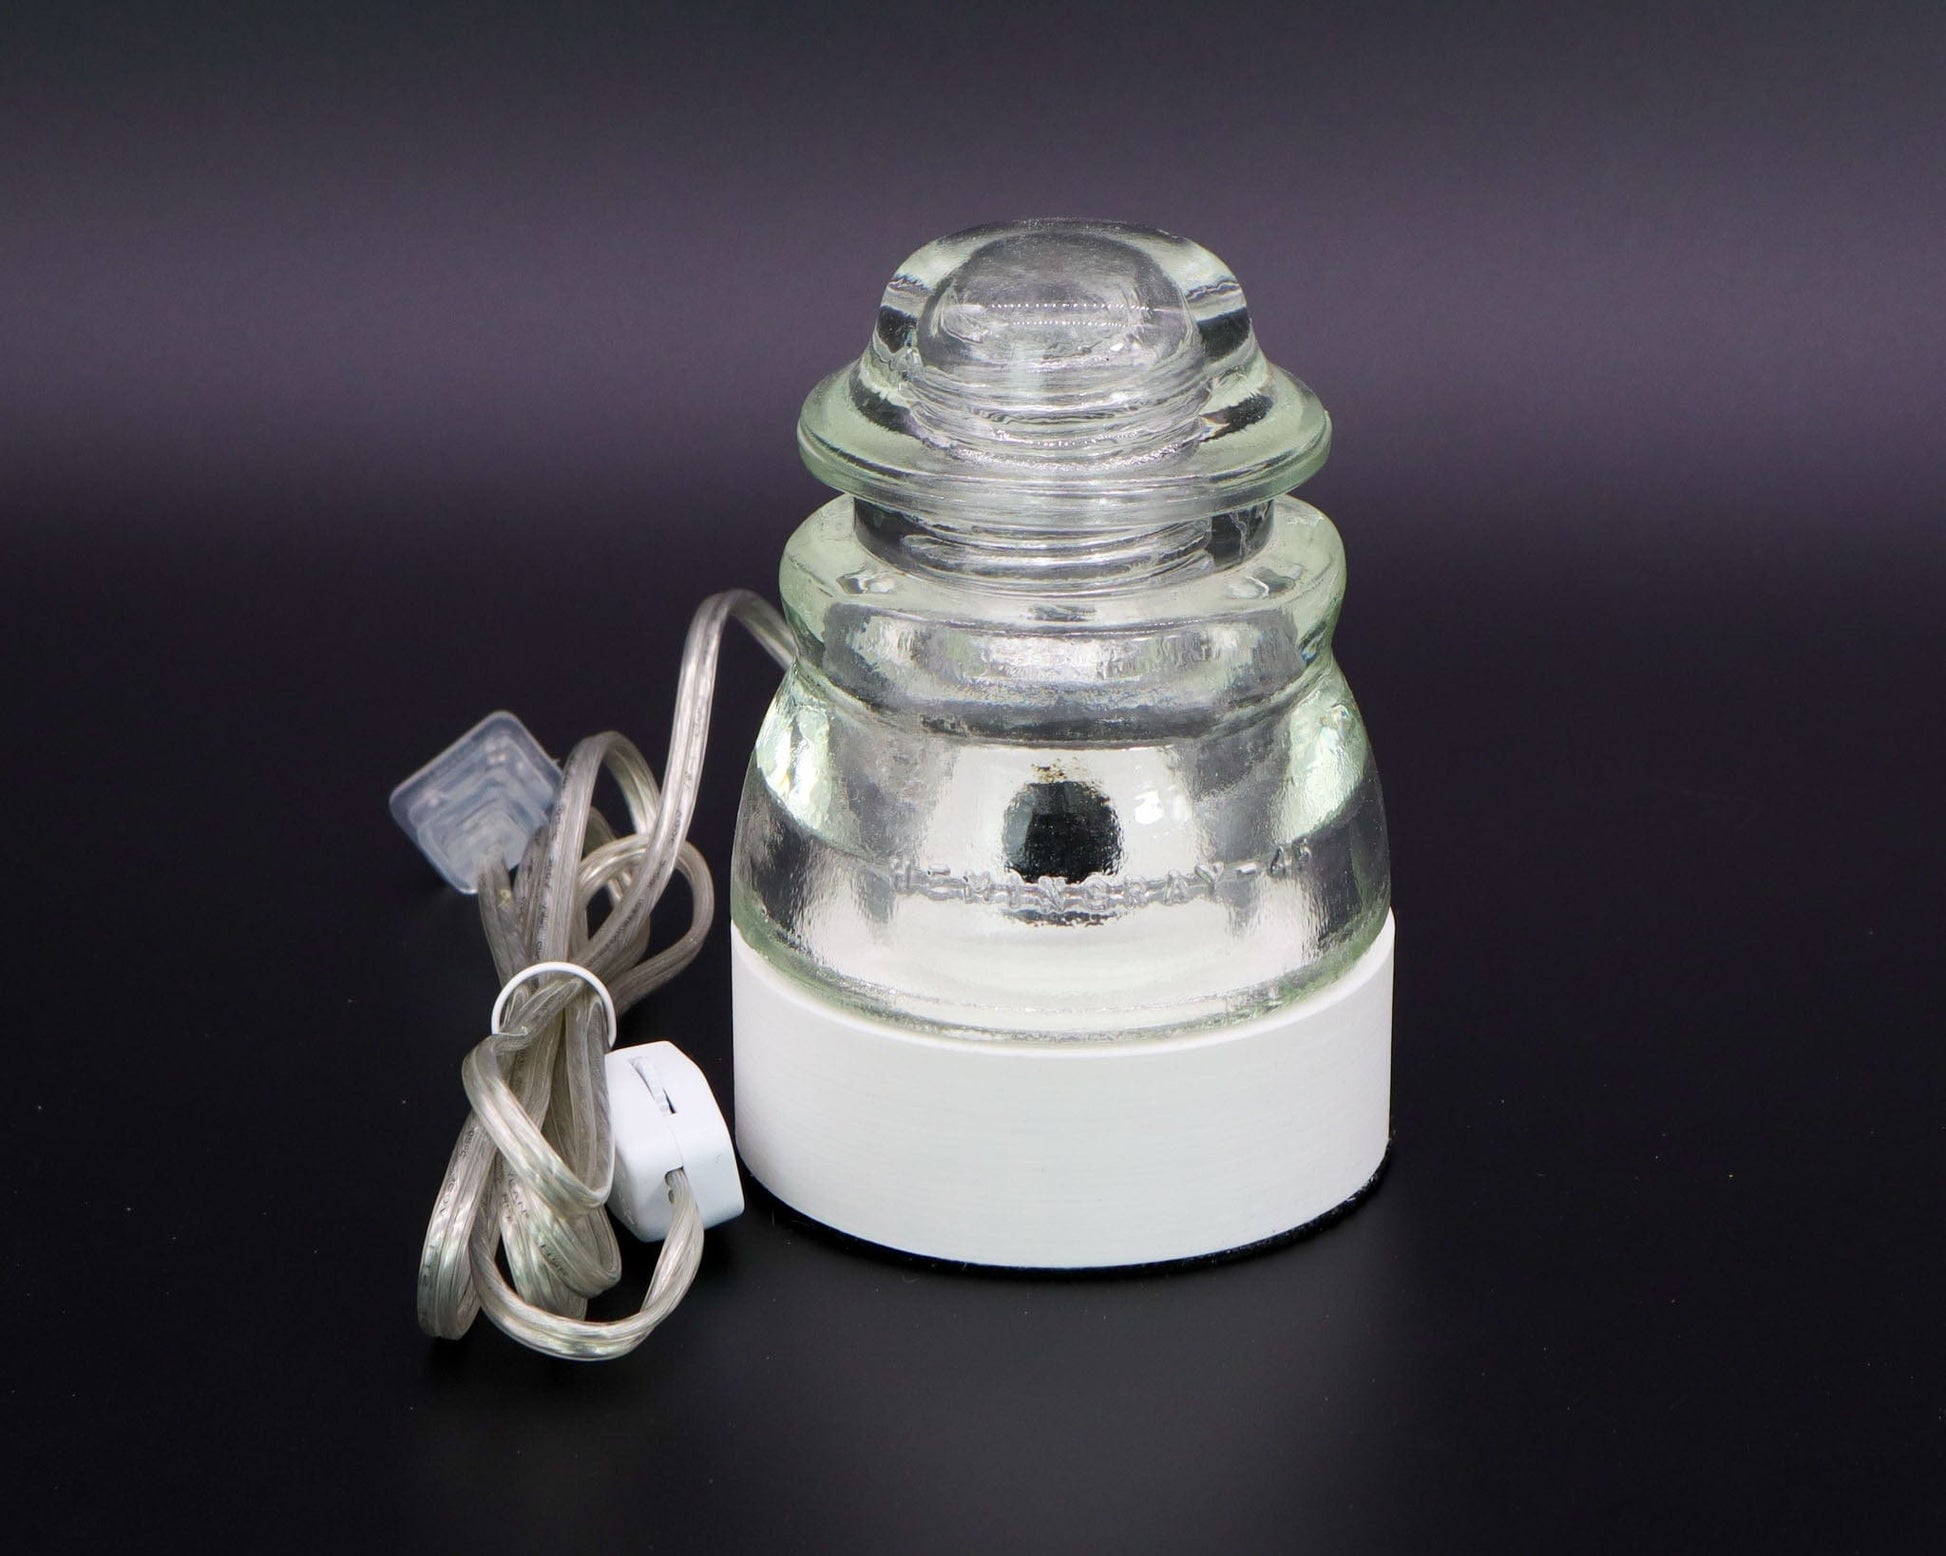 LightAndTimeArt Lamp base Lamp Base for "Hemingray-40, -42, -45" Glass Insulators, Industrial Lighting, Man Cave Decor